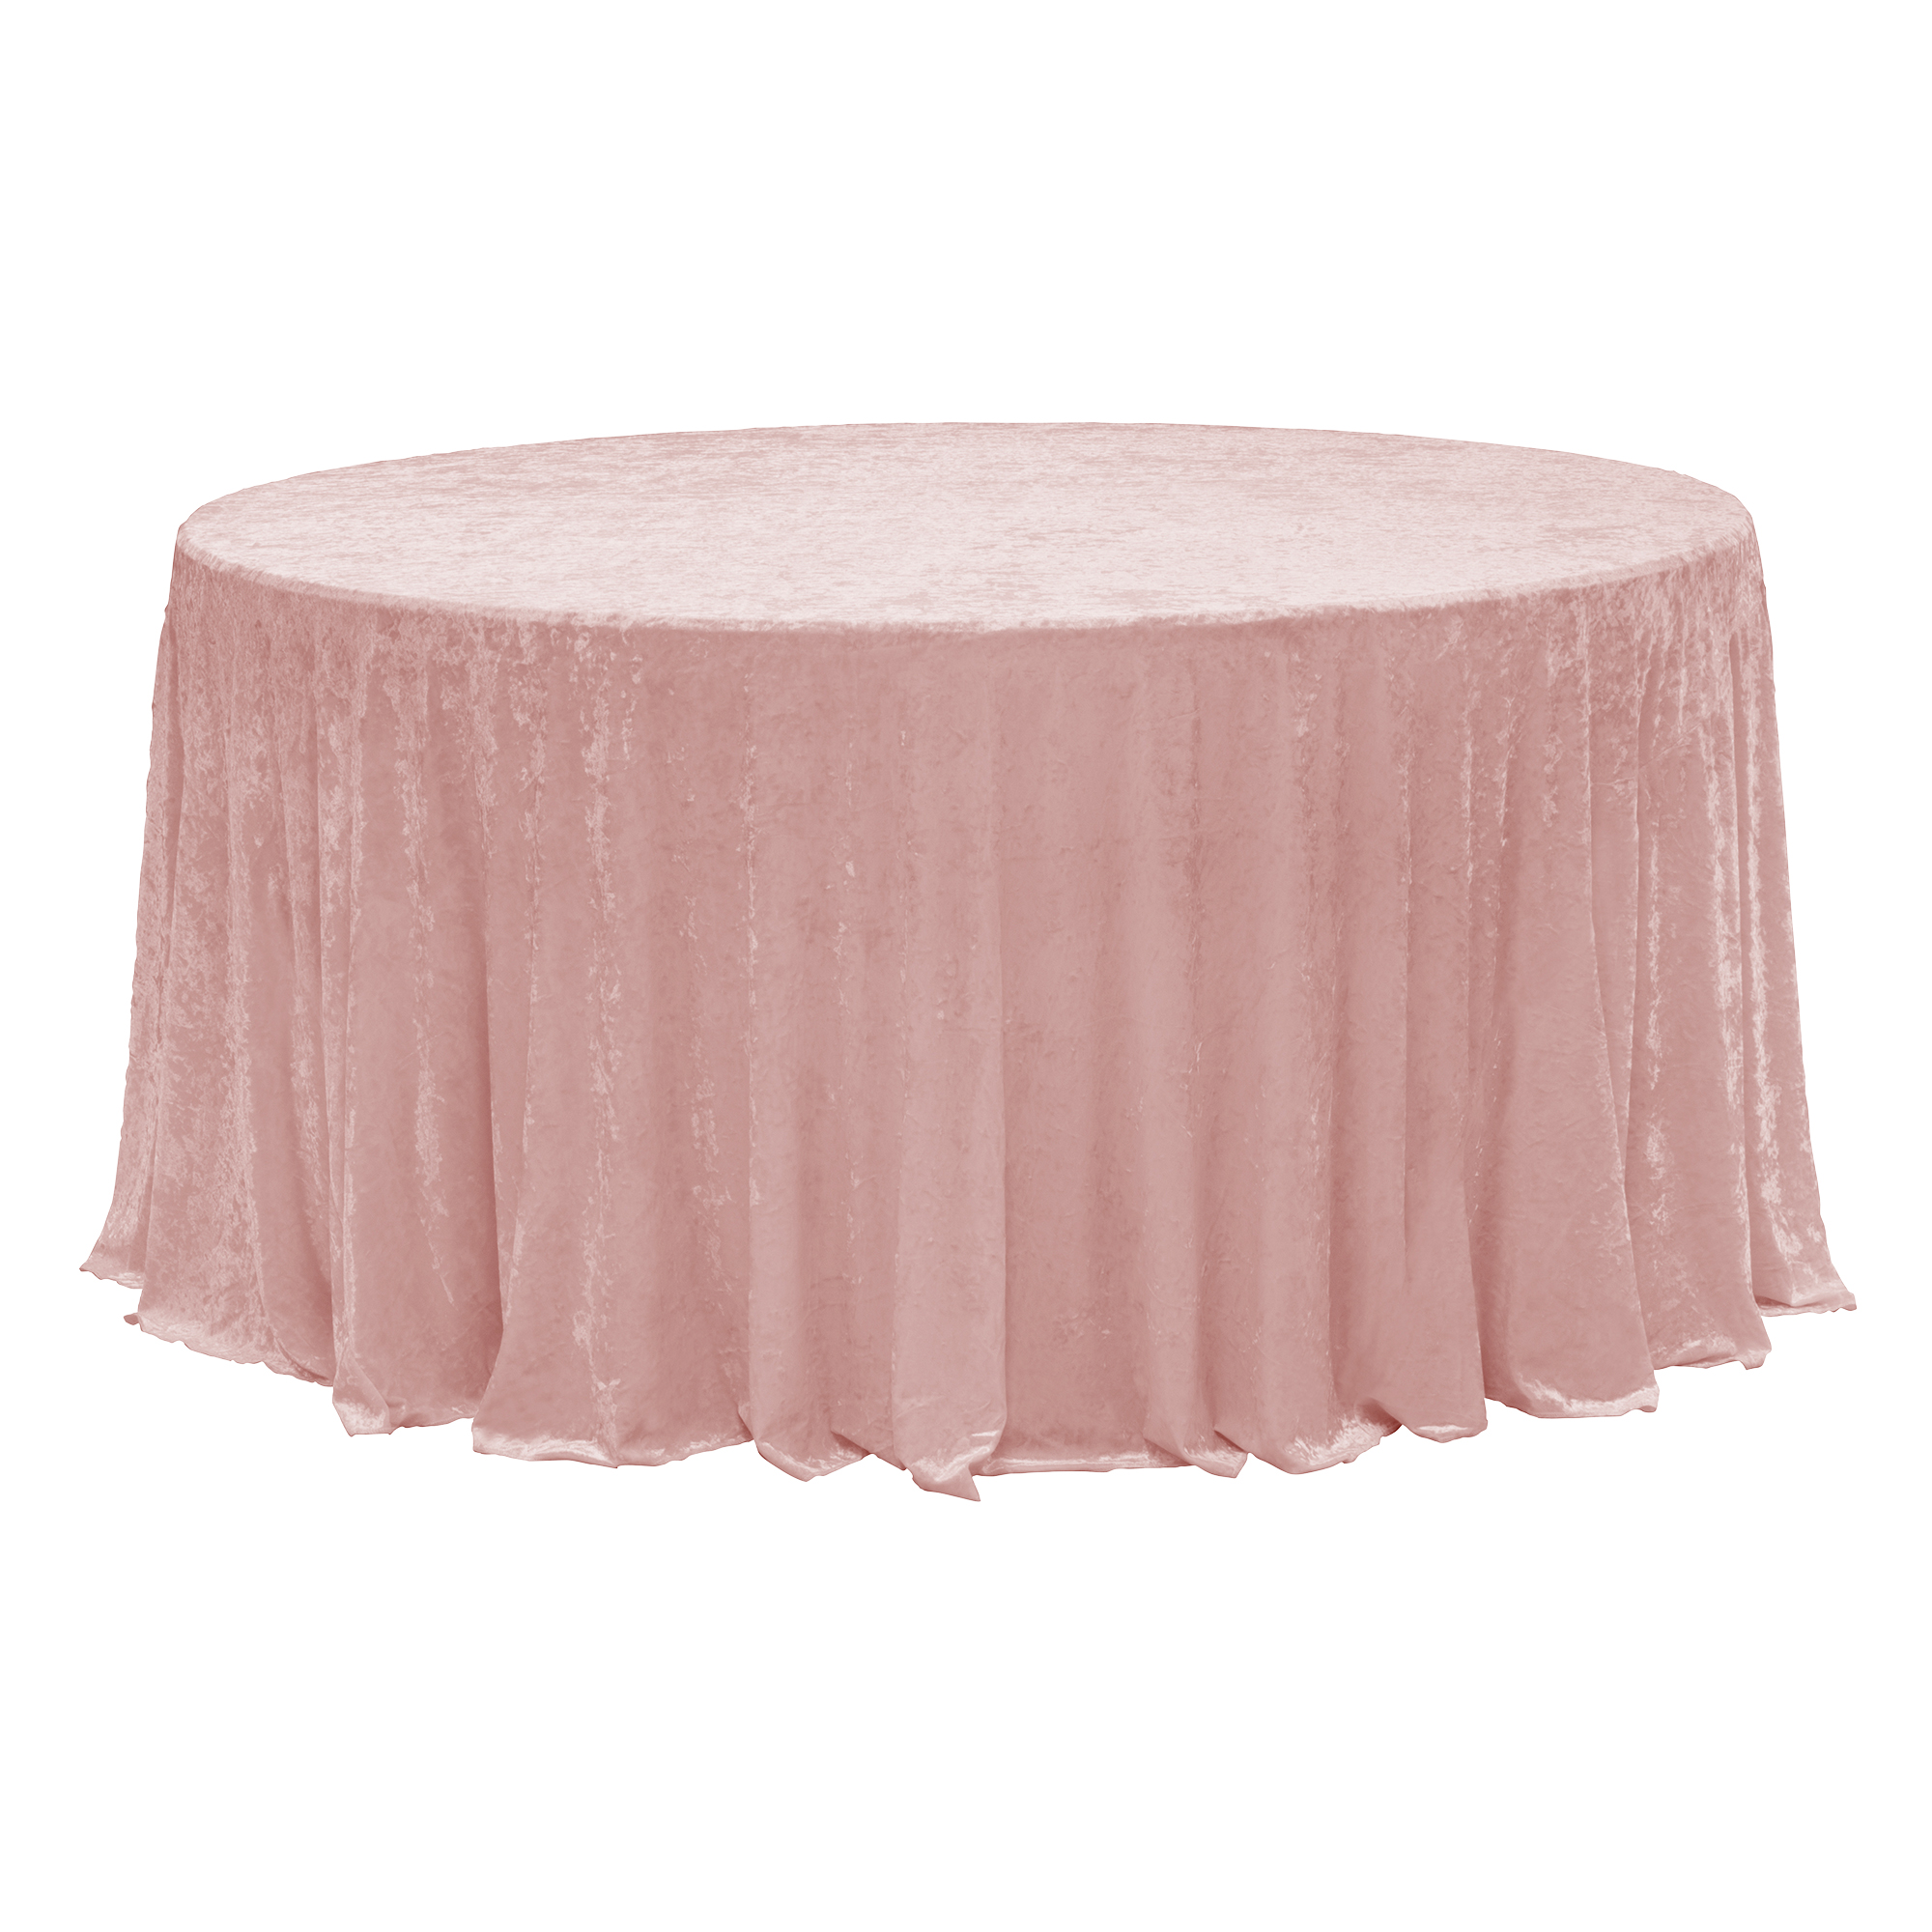 Round Velvet Table Cover 120" - Blush